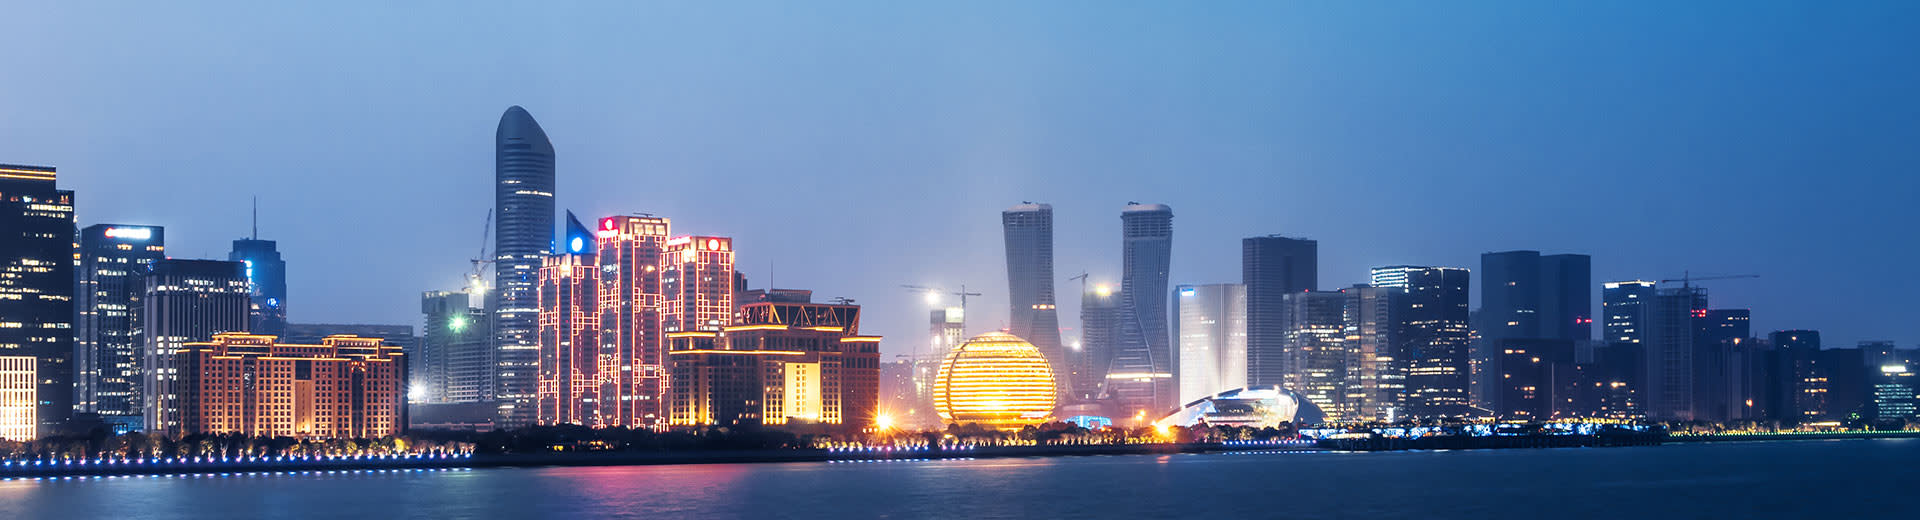 璀璨的摩天大楼点亮了杭州的夜空。